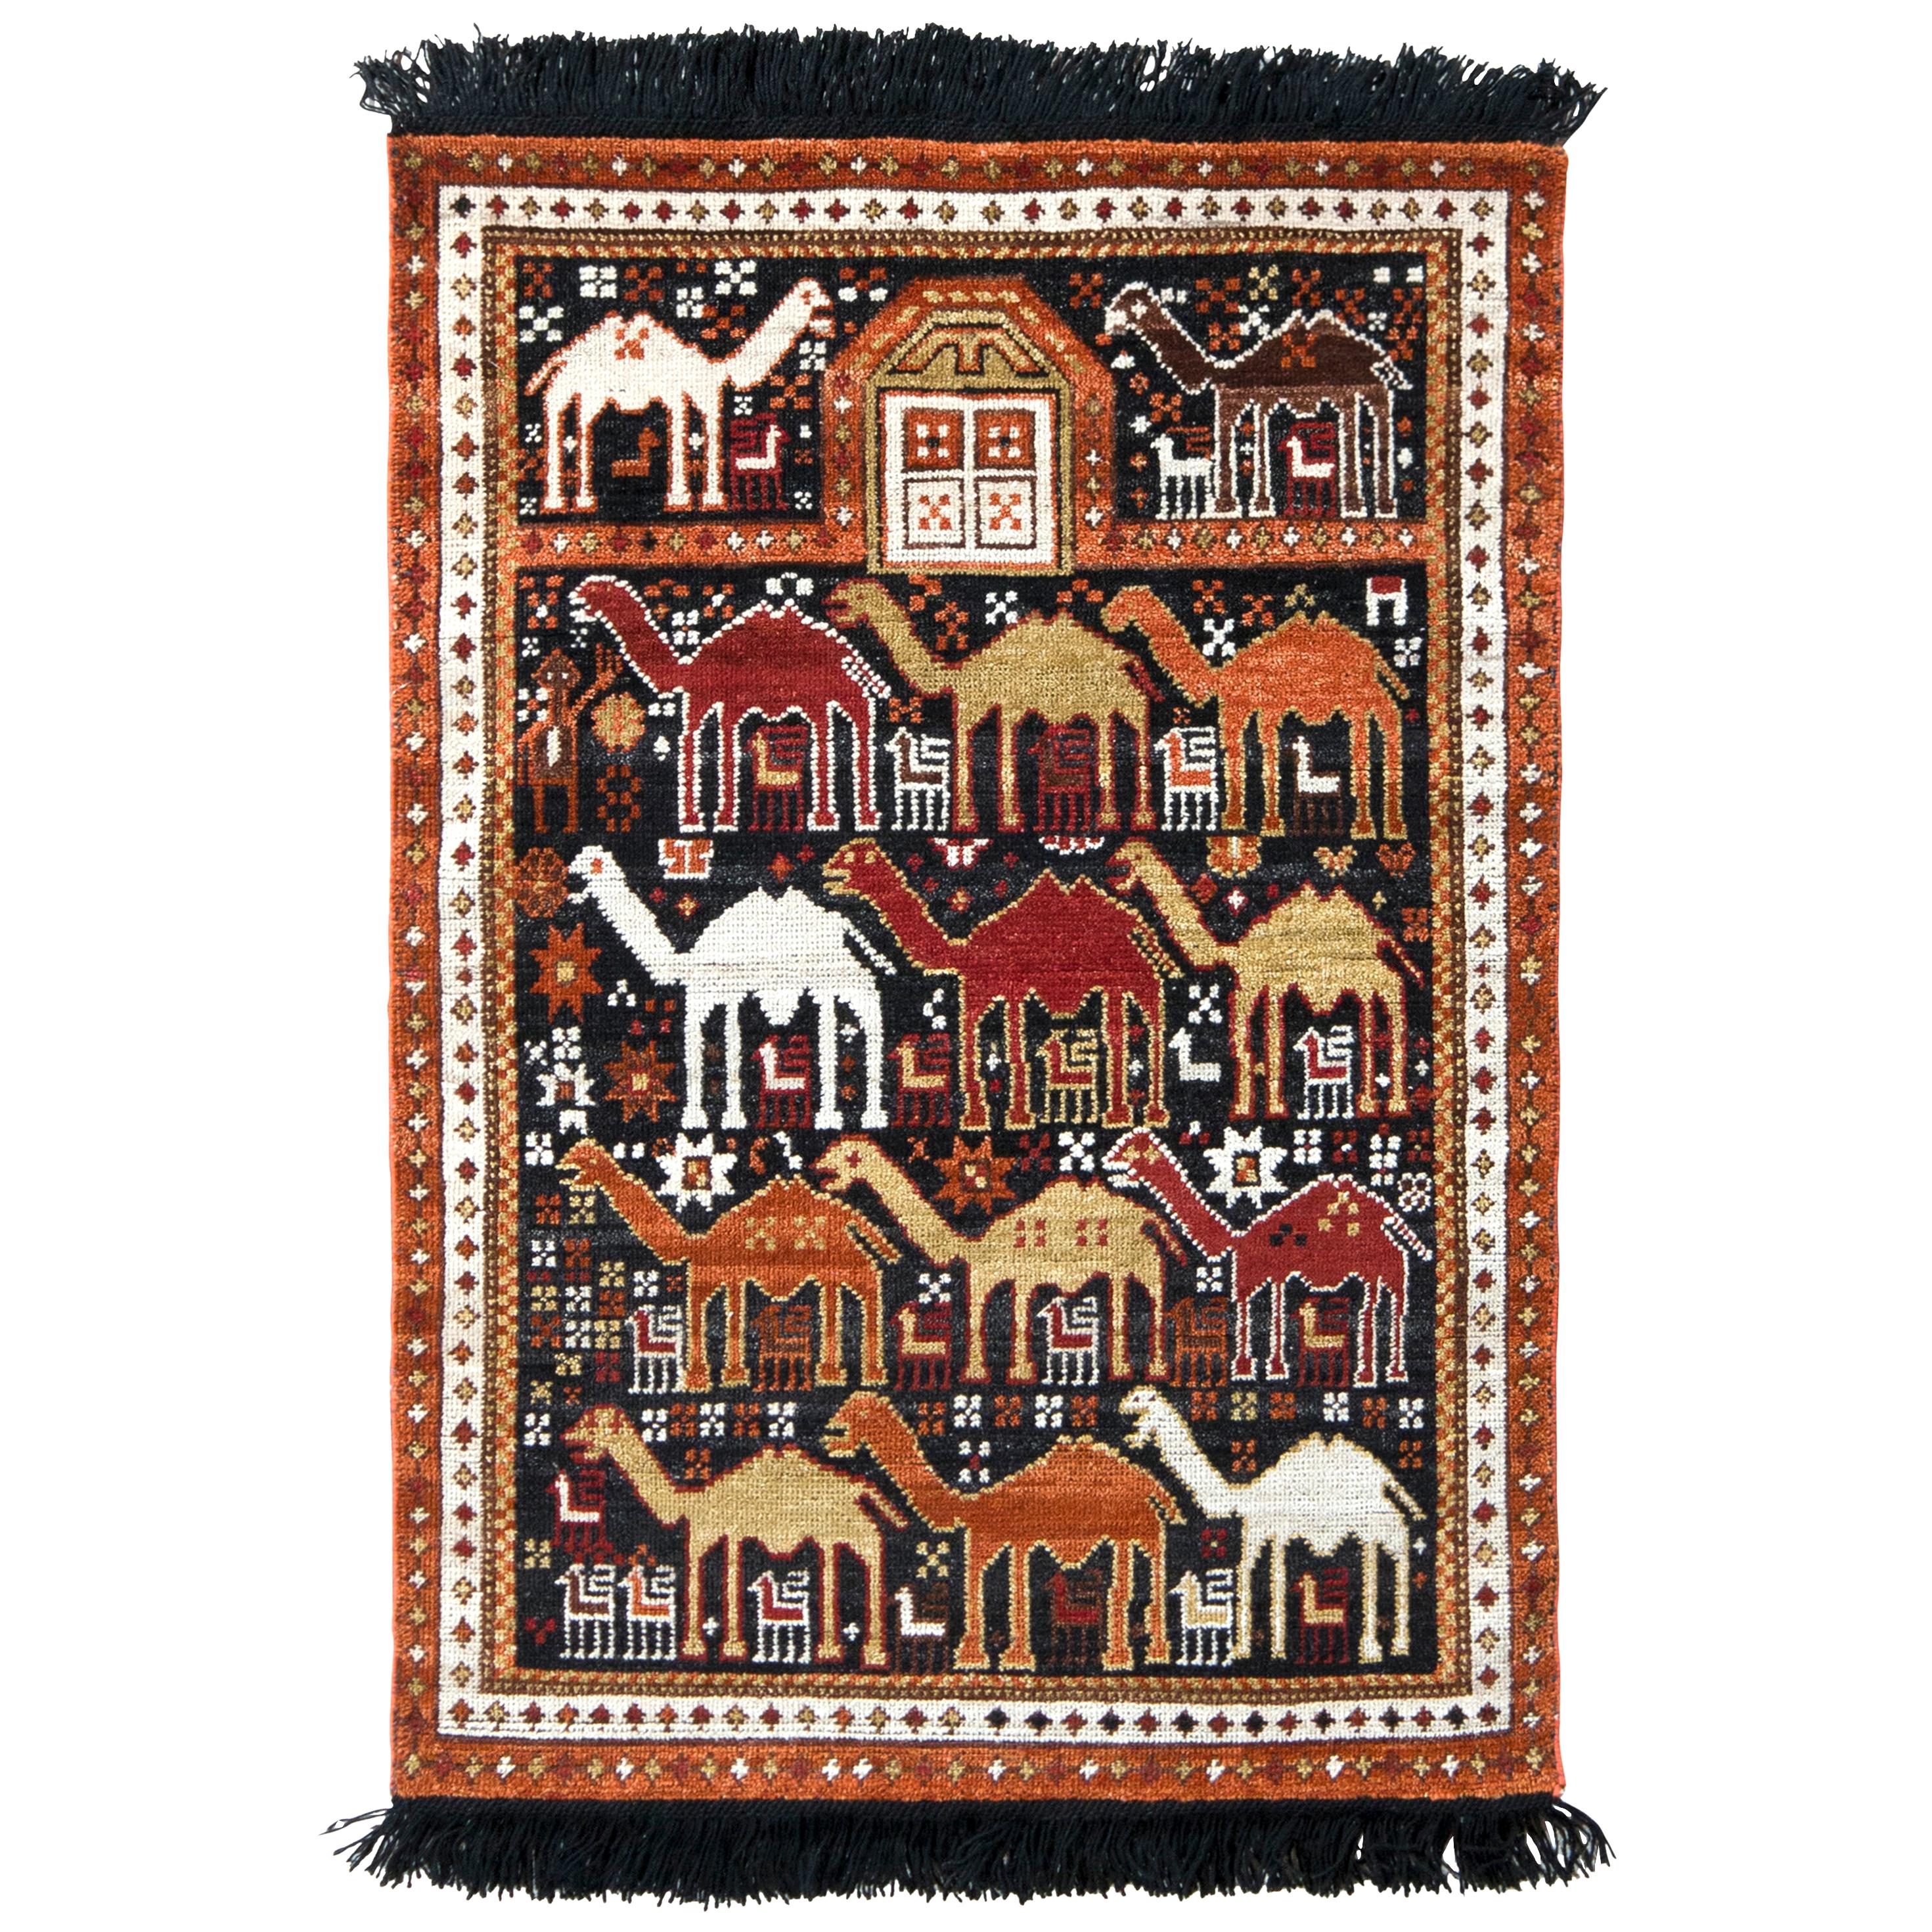 Rug & Kilim's Classic Camel Motif Custom Rug in Orange Brown Caucasian Pattern